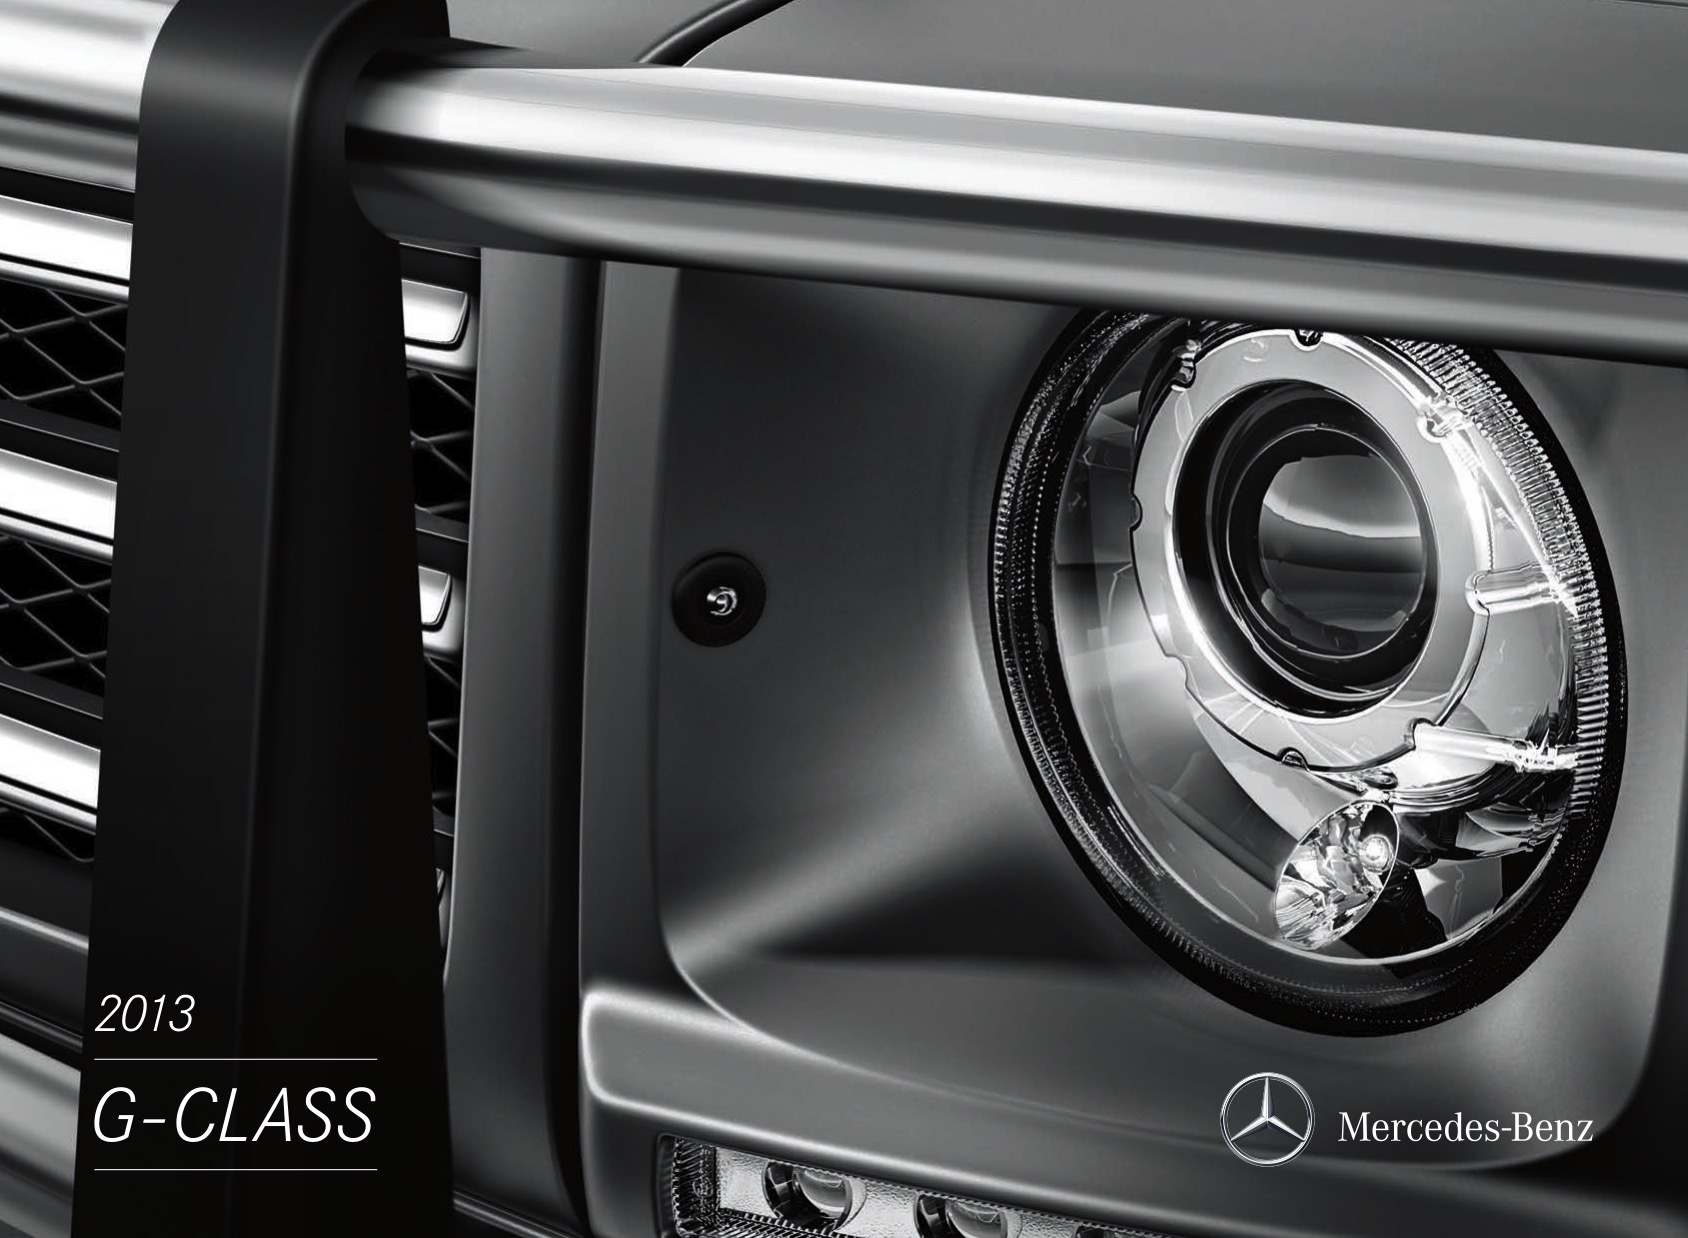 2013 Mercedes-Benz G-Class Brochure